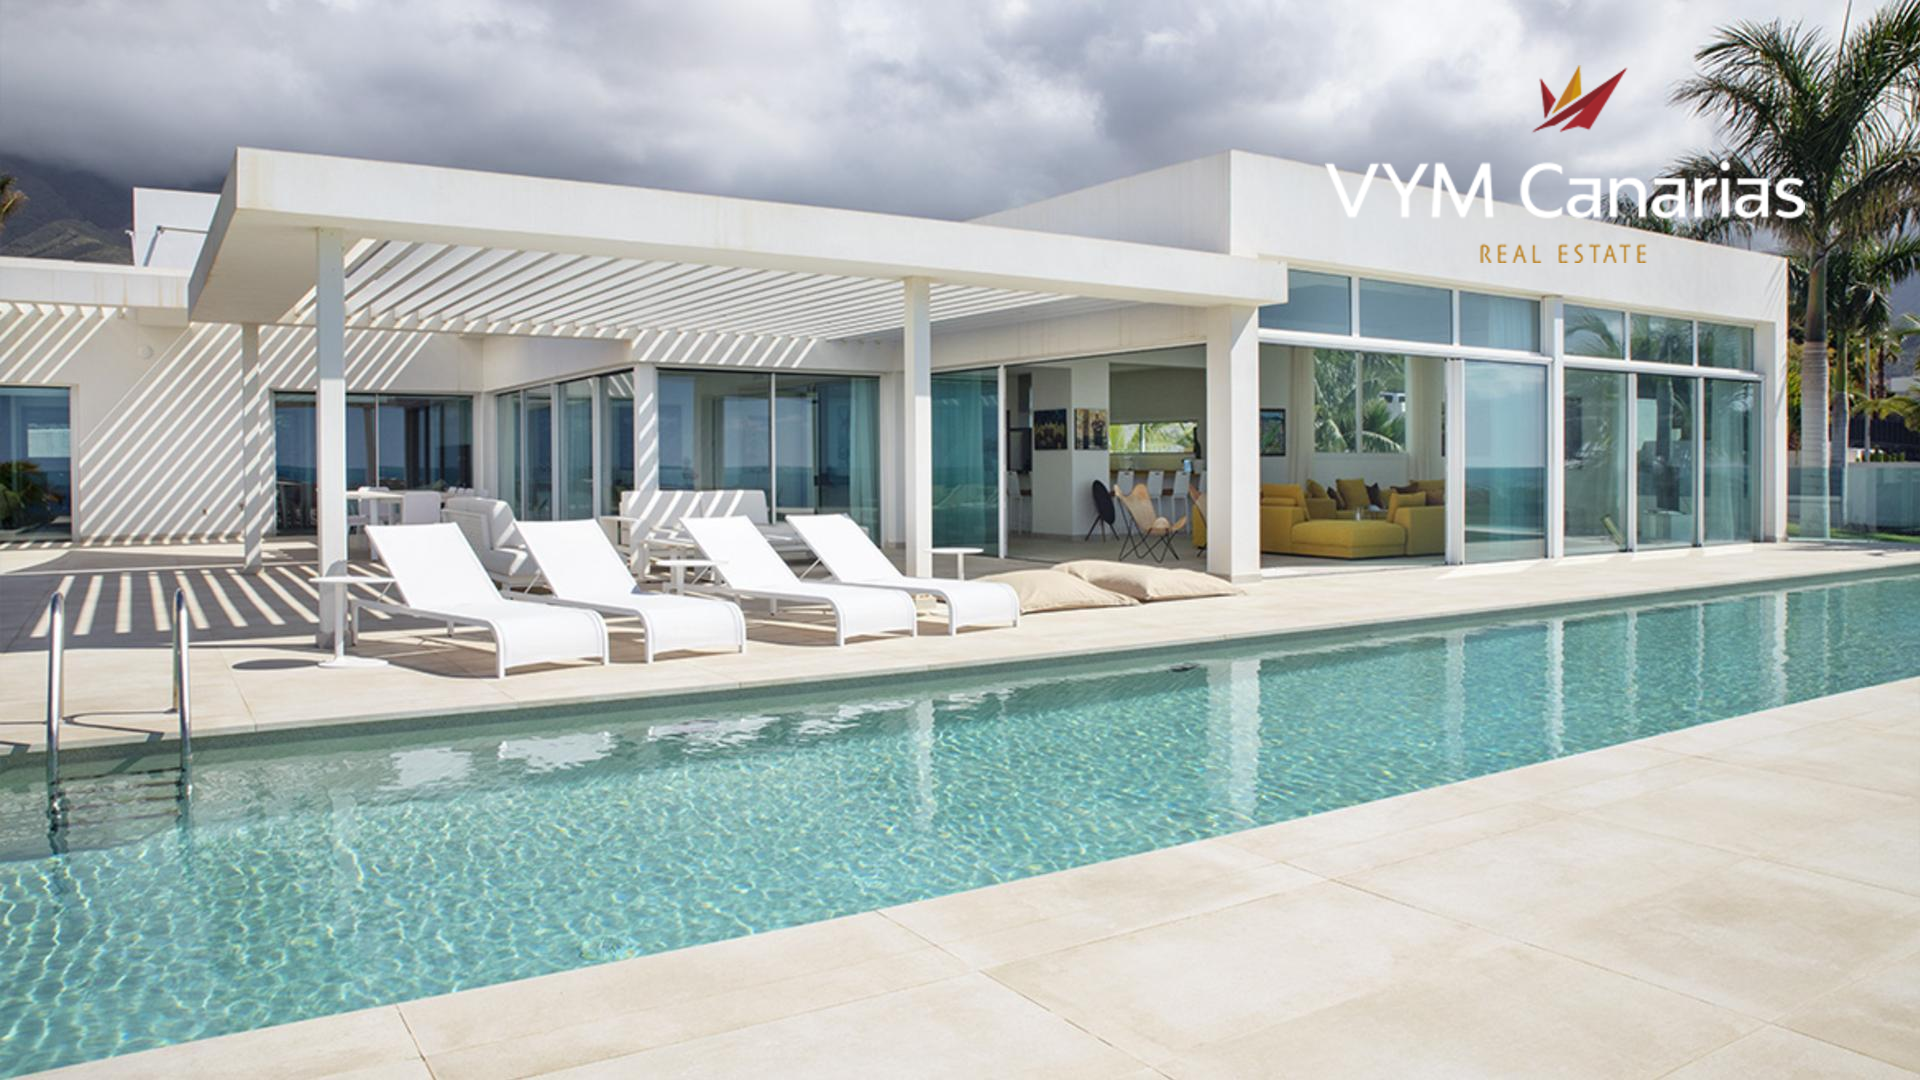 Villa in La Caleta marketed by Vym Canarias